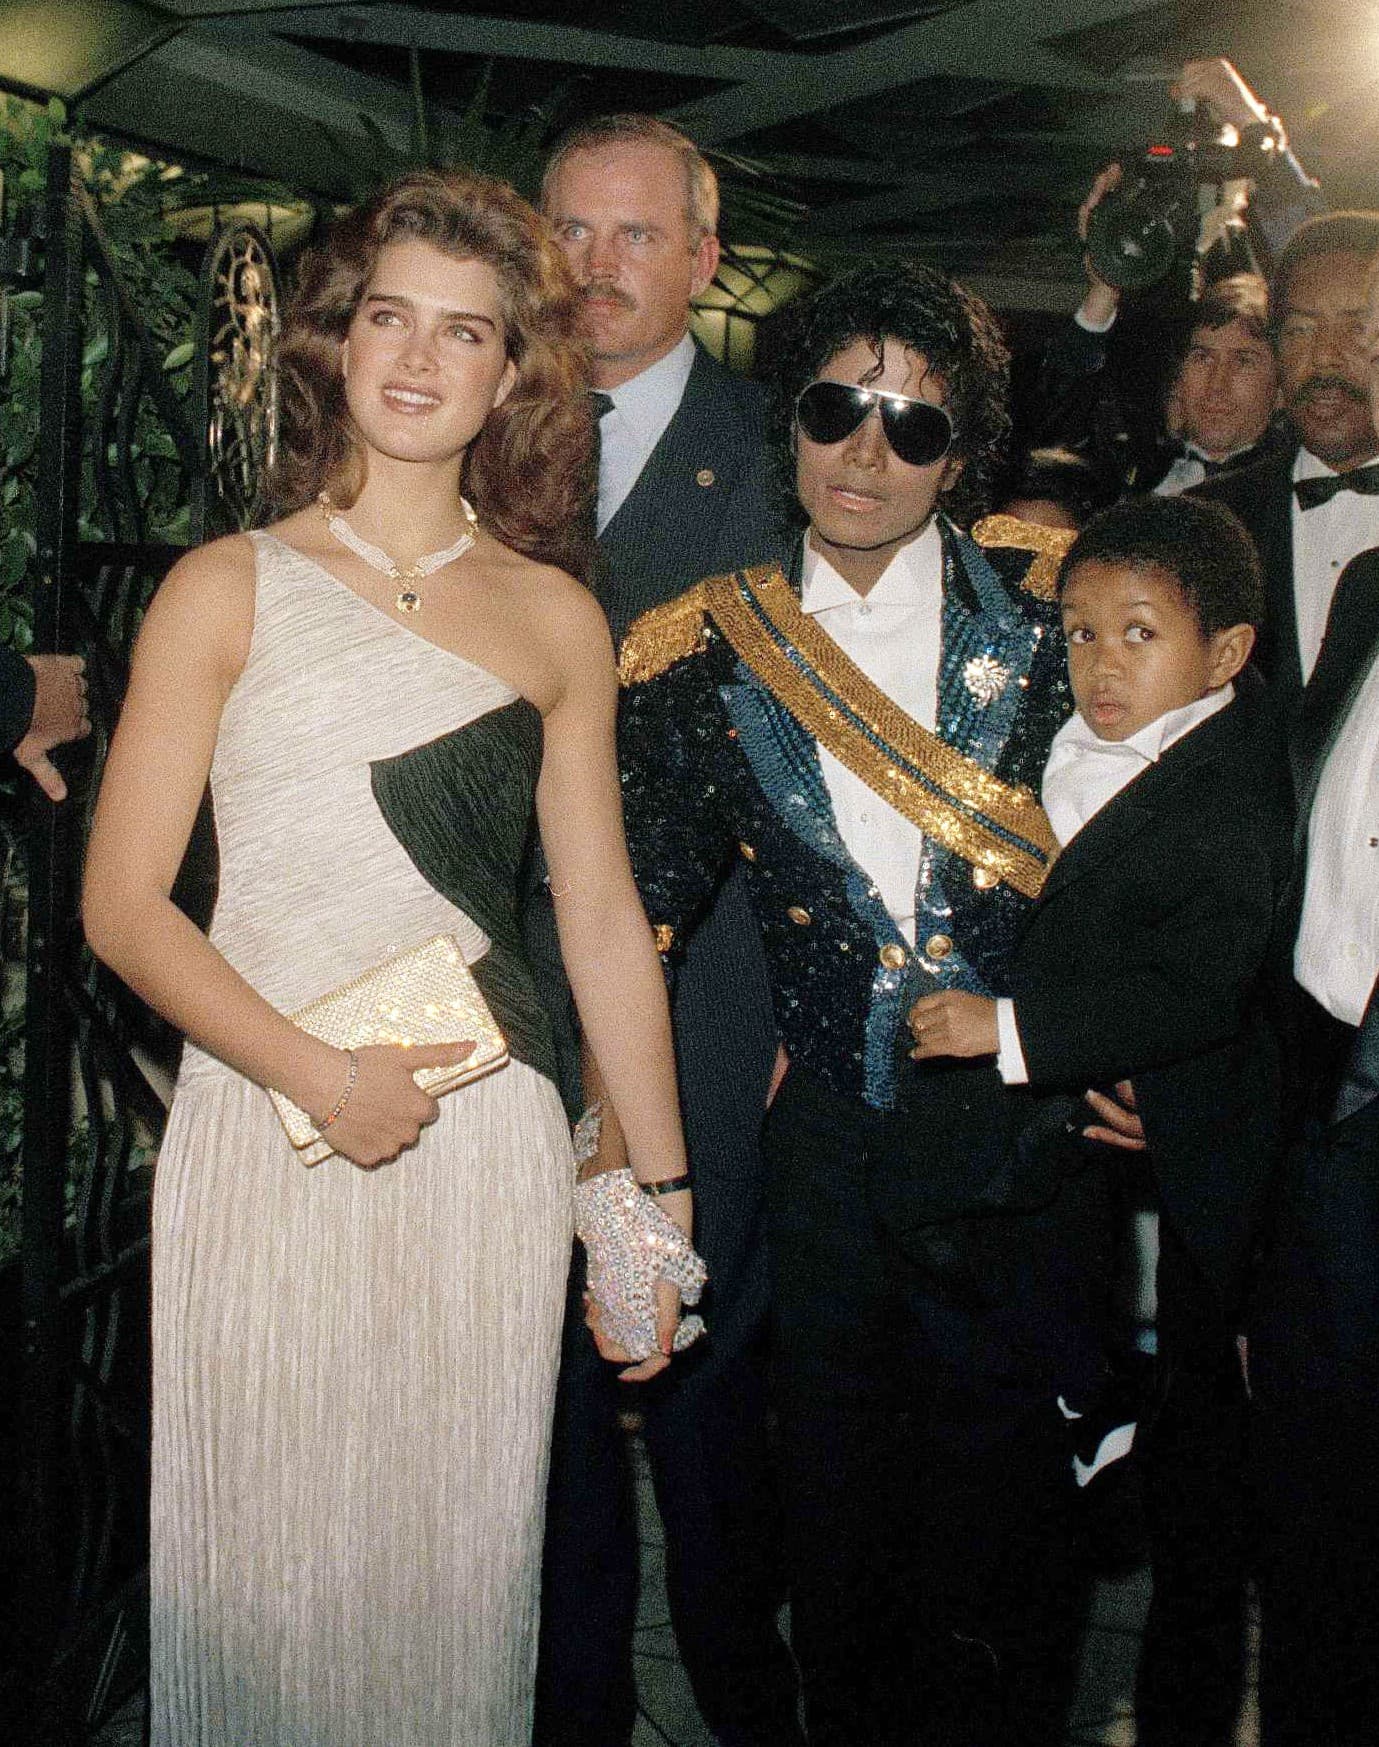 Brooke Shieldsová randila aj s kráľom popu Michaelom Jacksonom (Zdroj: SITA/AP Photo/Reed Saxon, File)